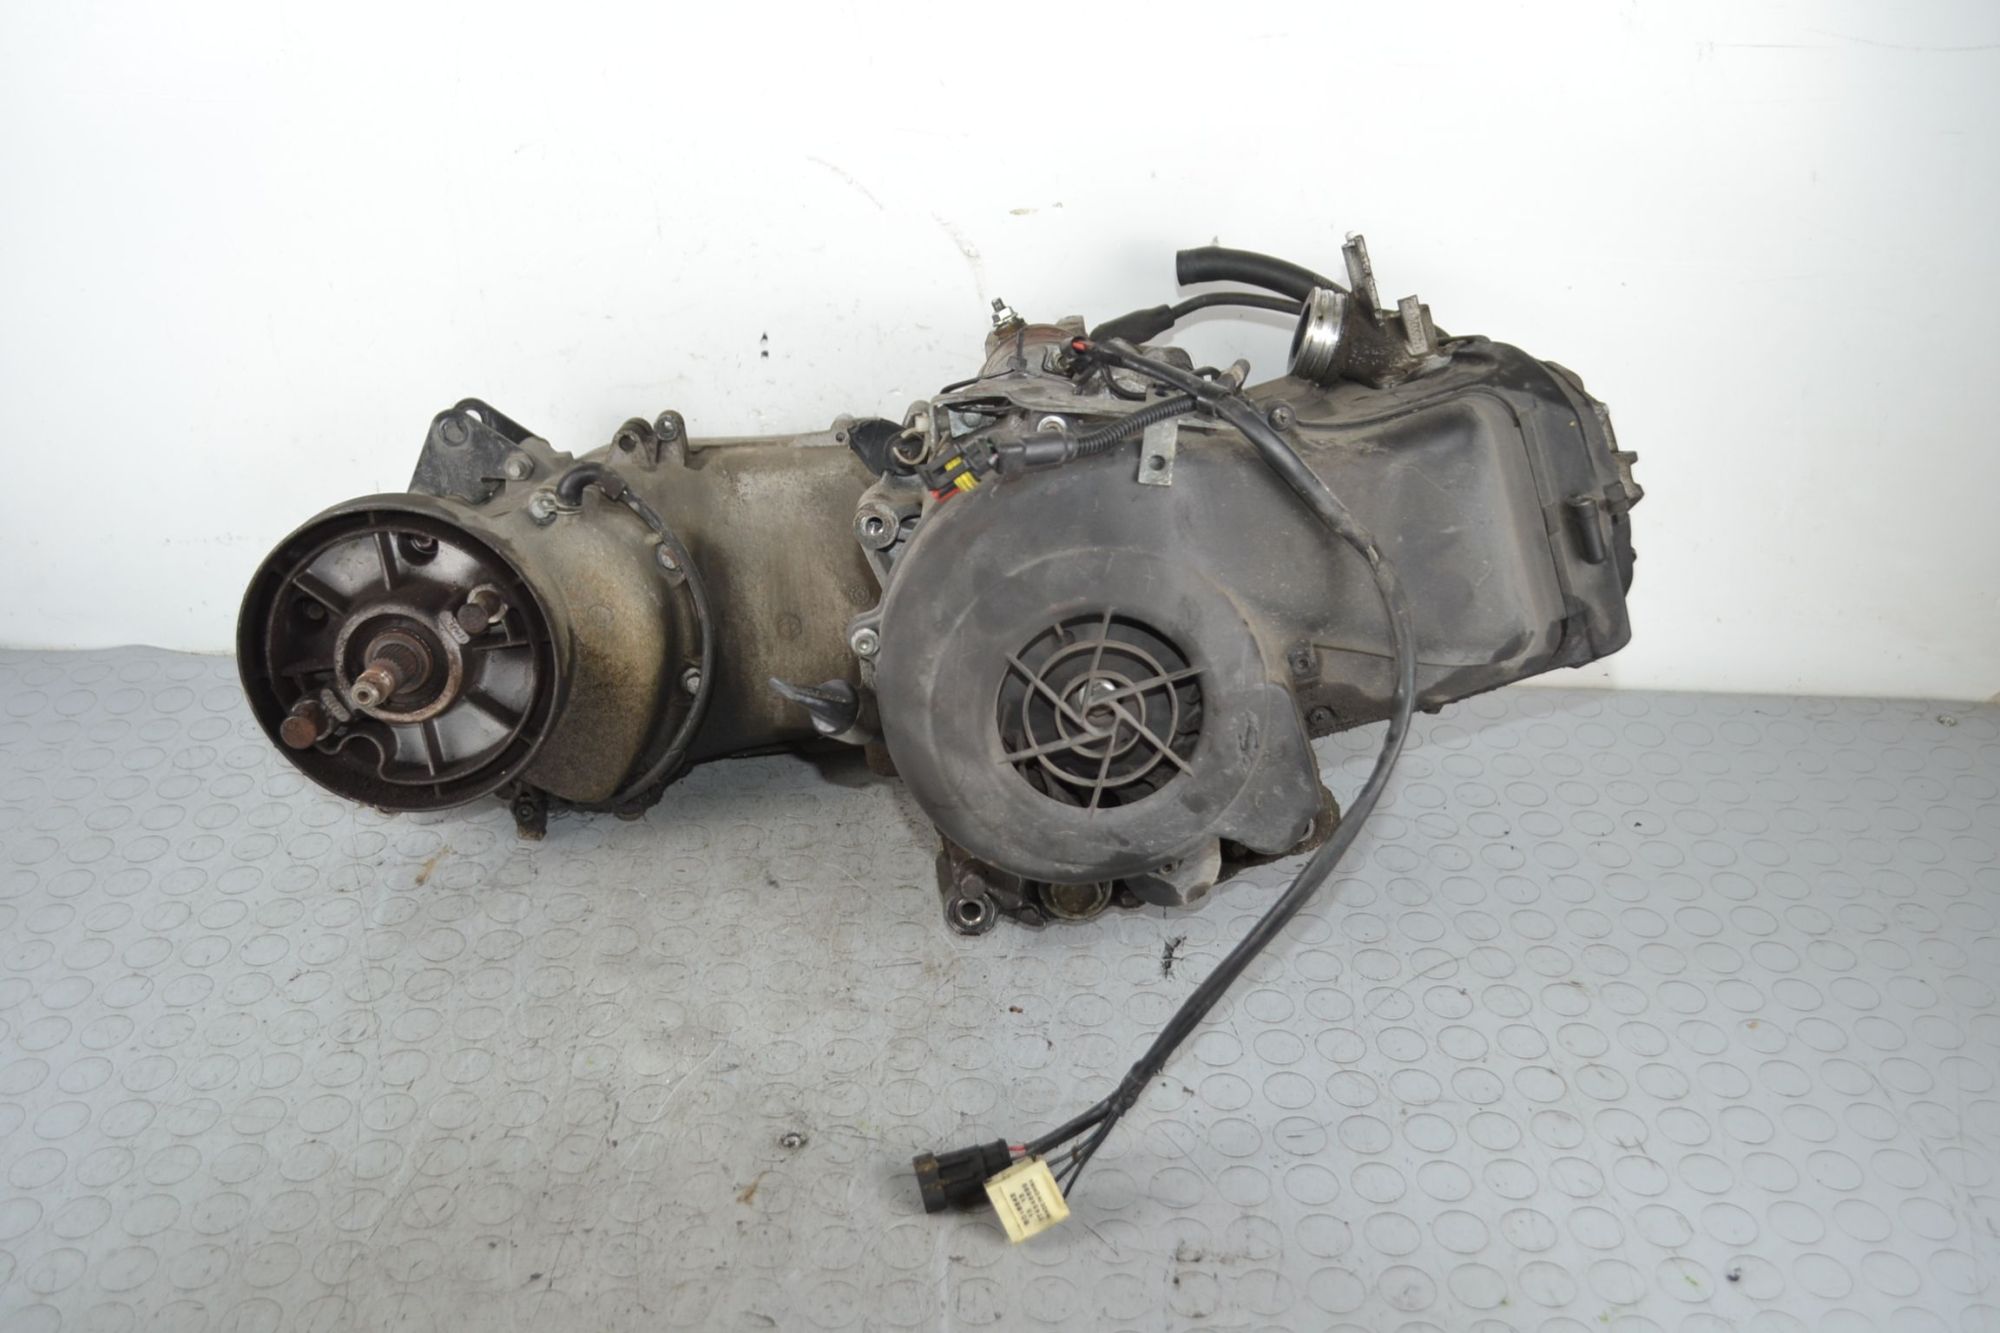 Blocco motore Piaggio Liberty 3V 125cc Dal 2013 al 2015 Cod M737M n serie 5016352  1707898713362